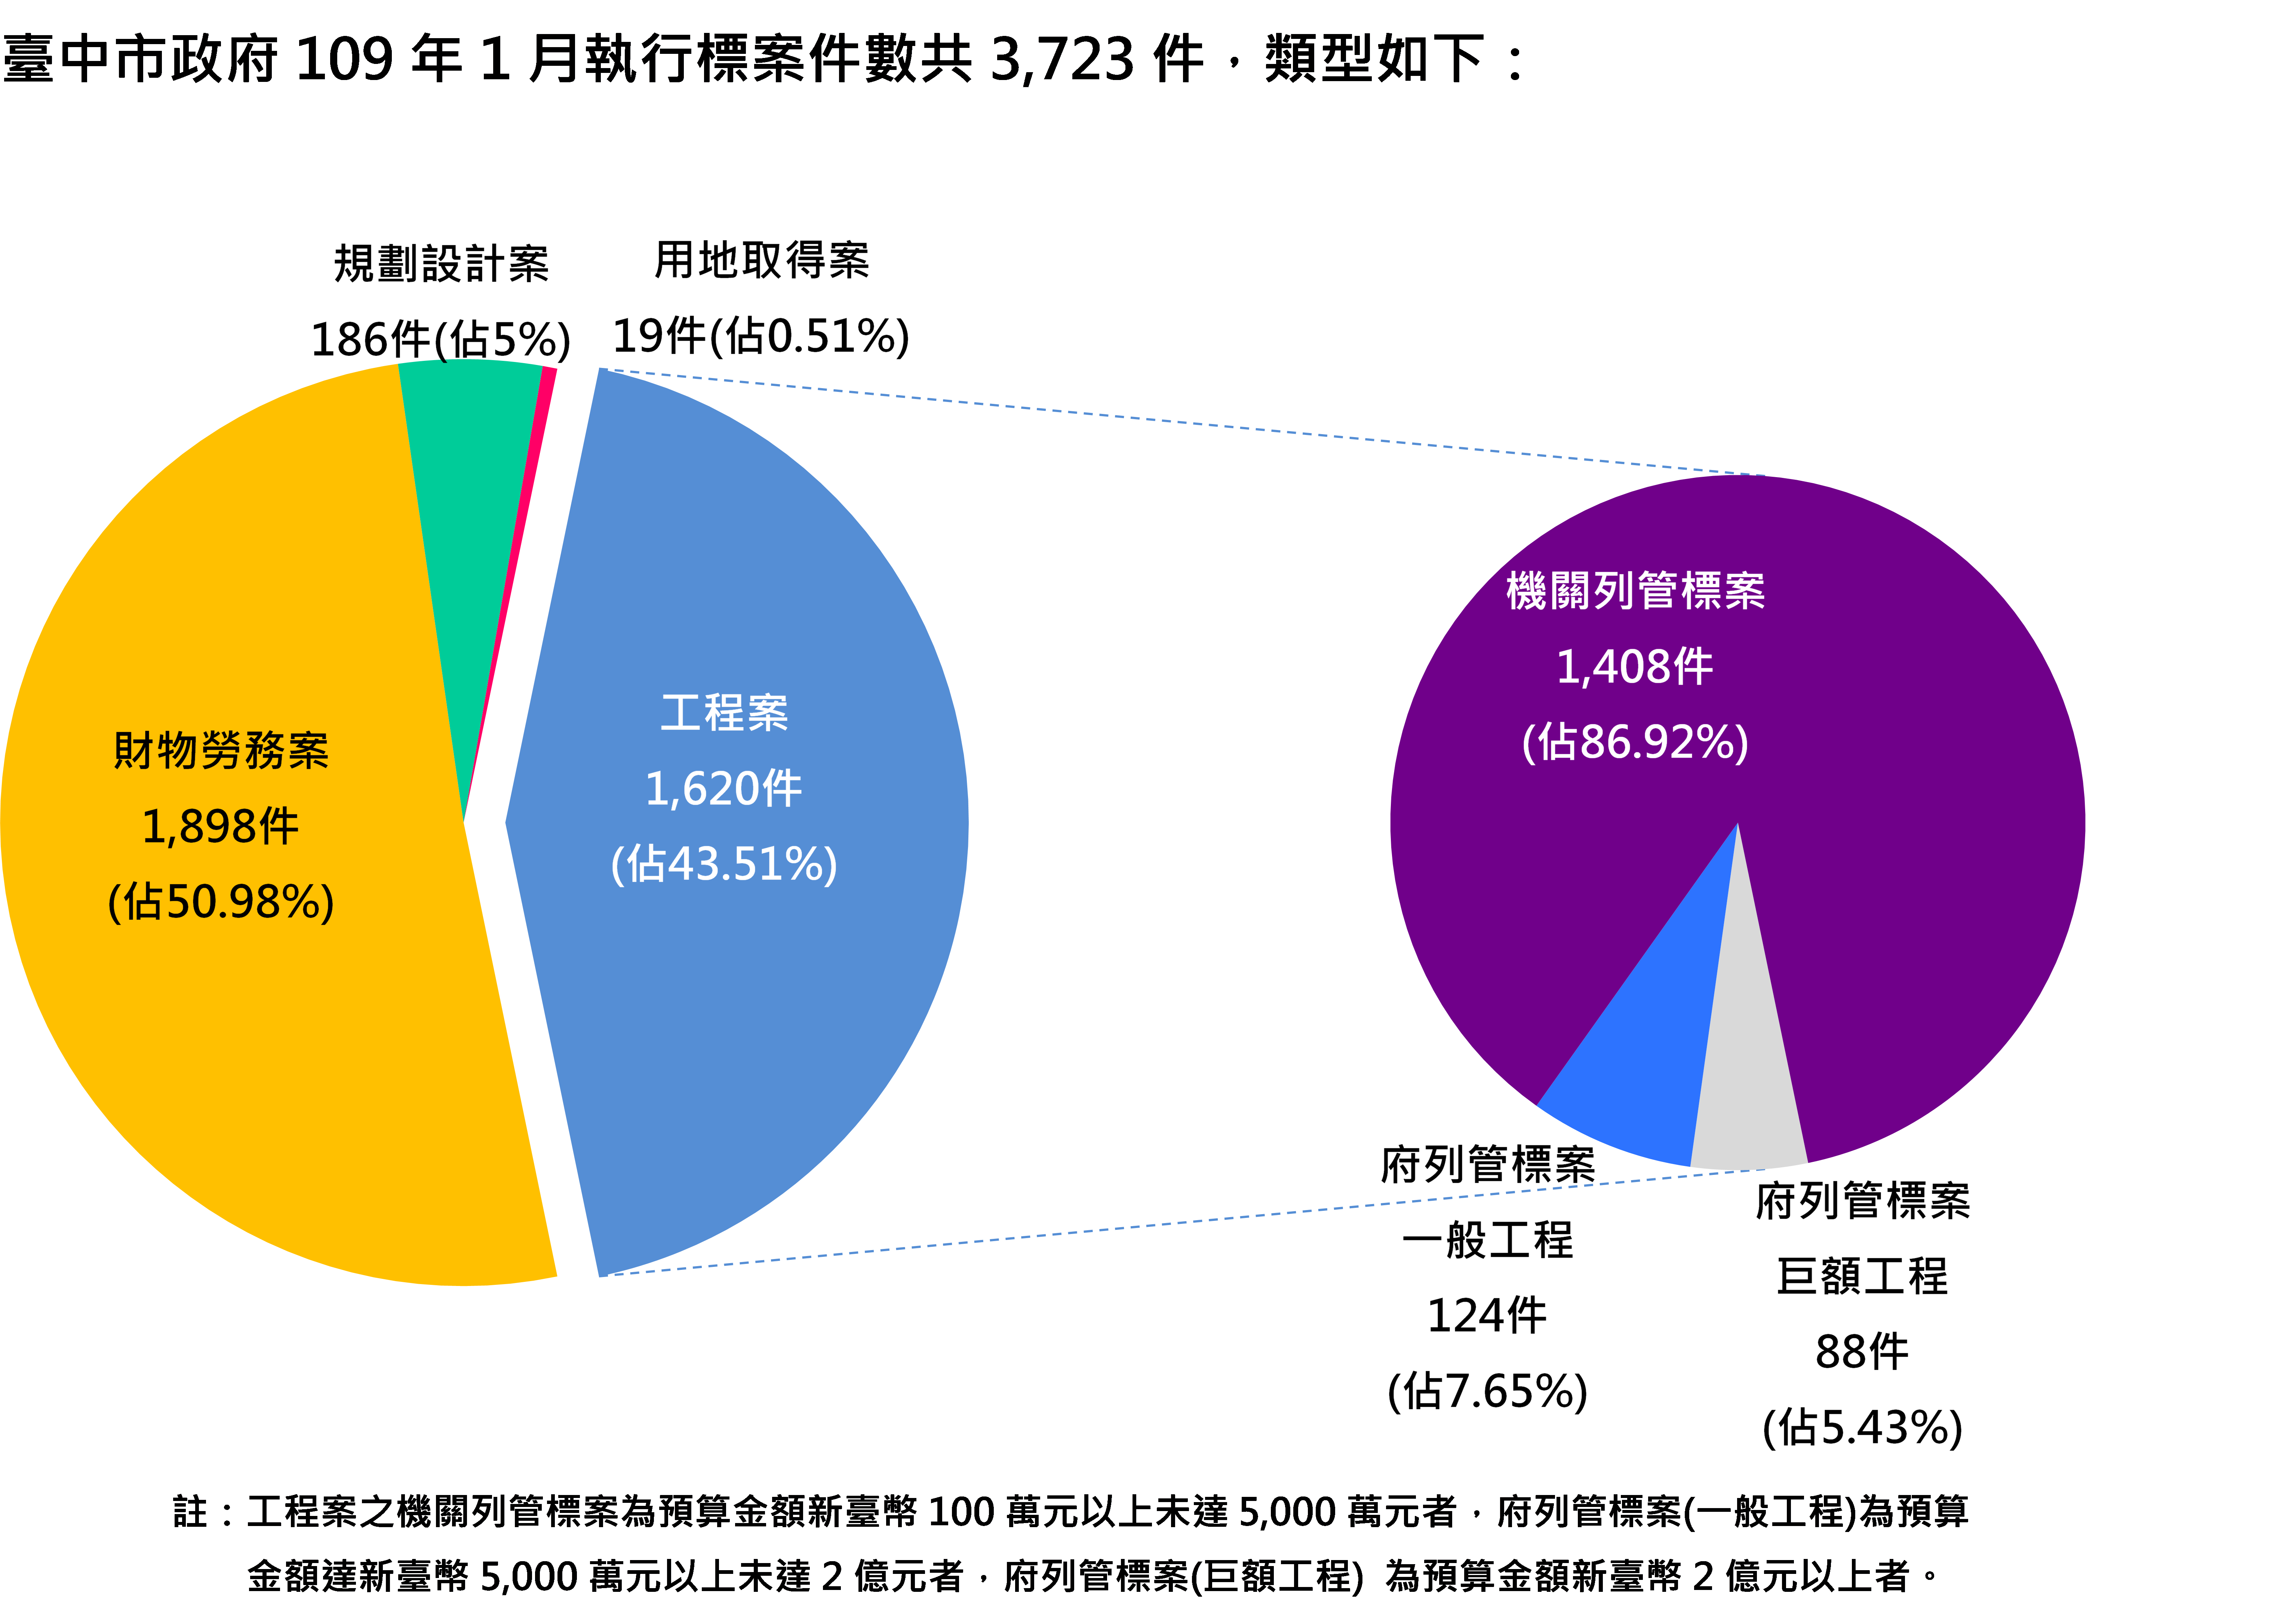 臺中市政府109年1月執行標案案件數類型圖